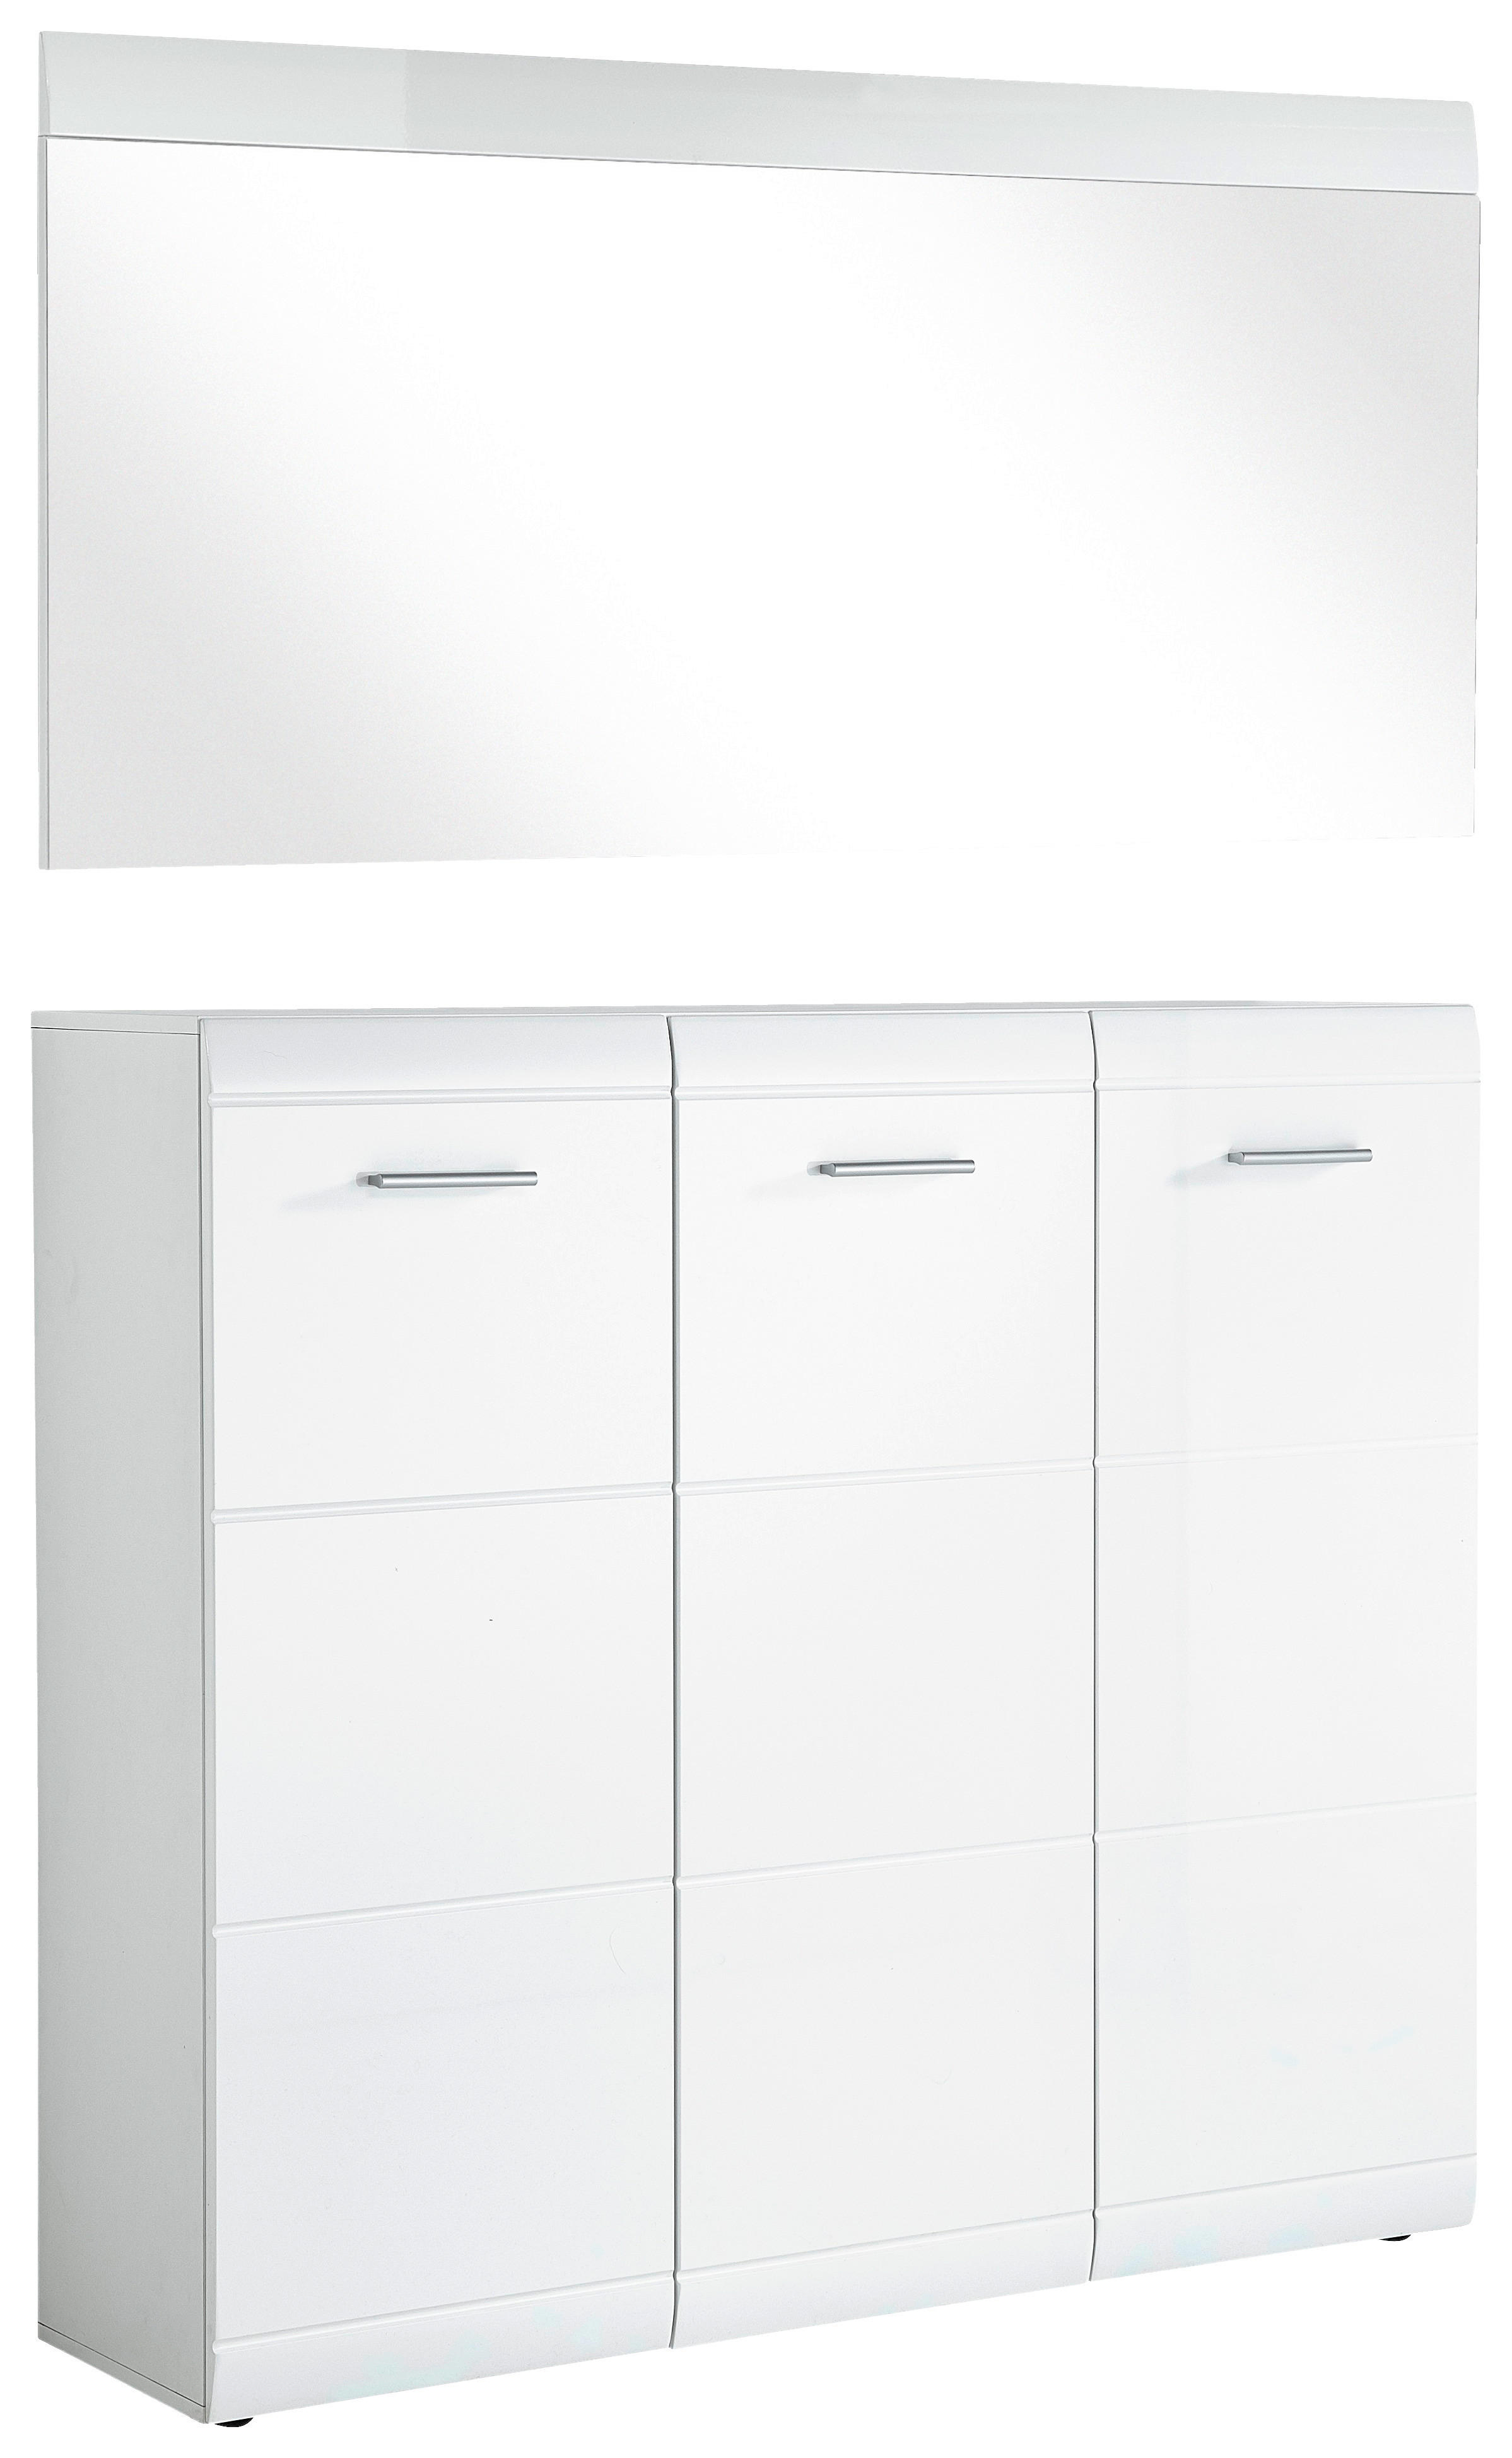 GARDEROBE Weiß  - Weiß, Design (134/200/36cm) - Carryhome